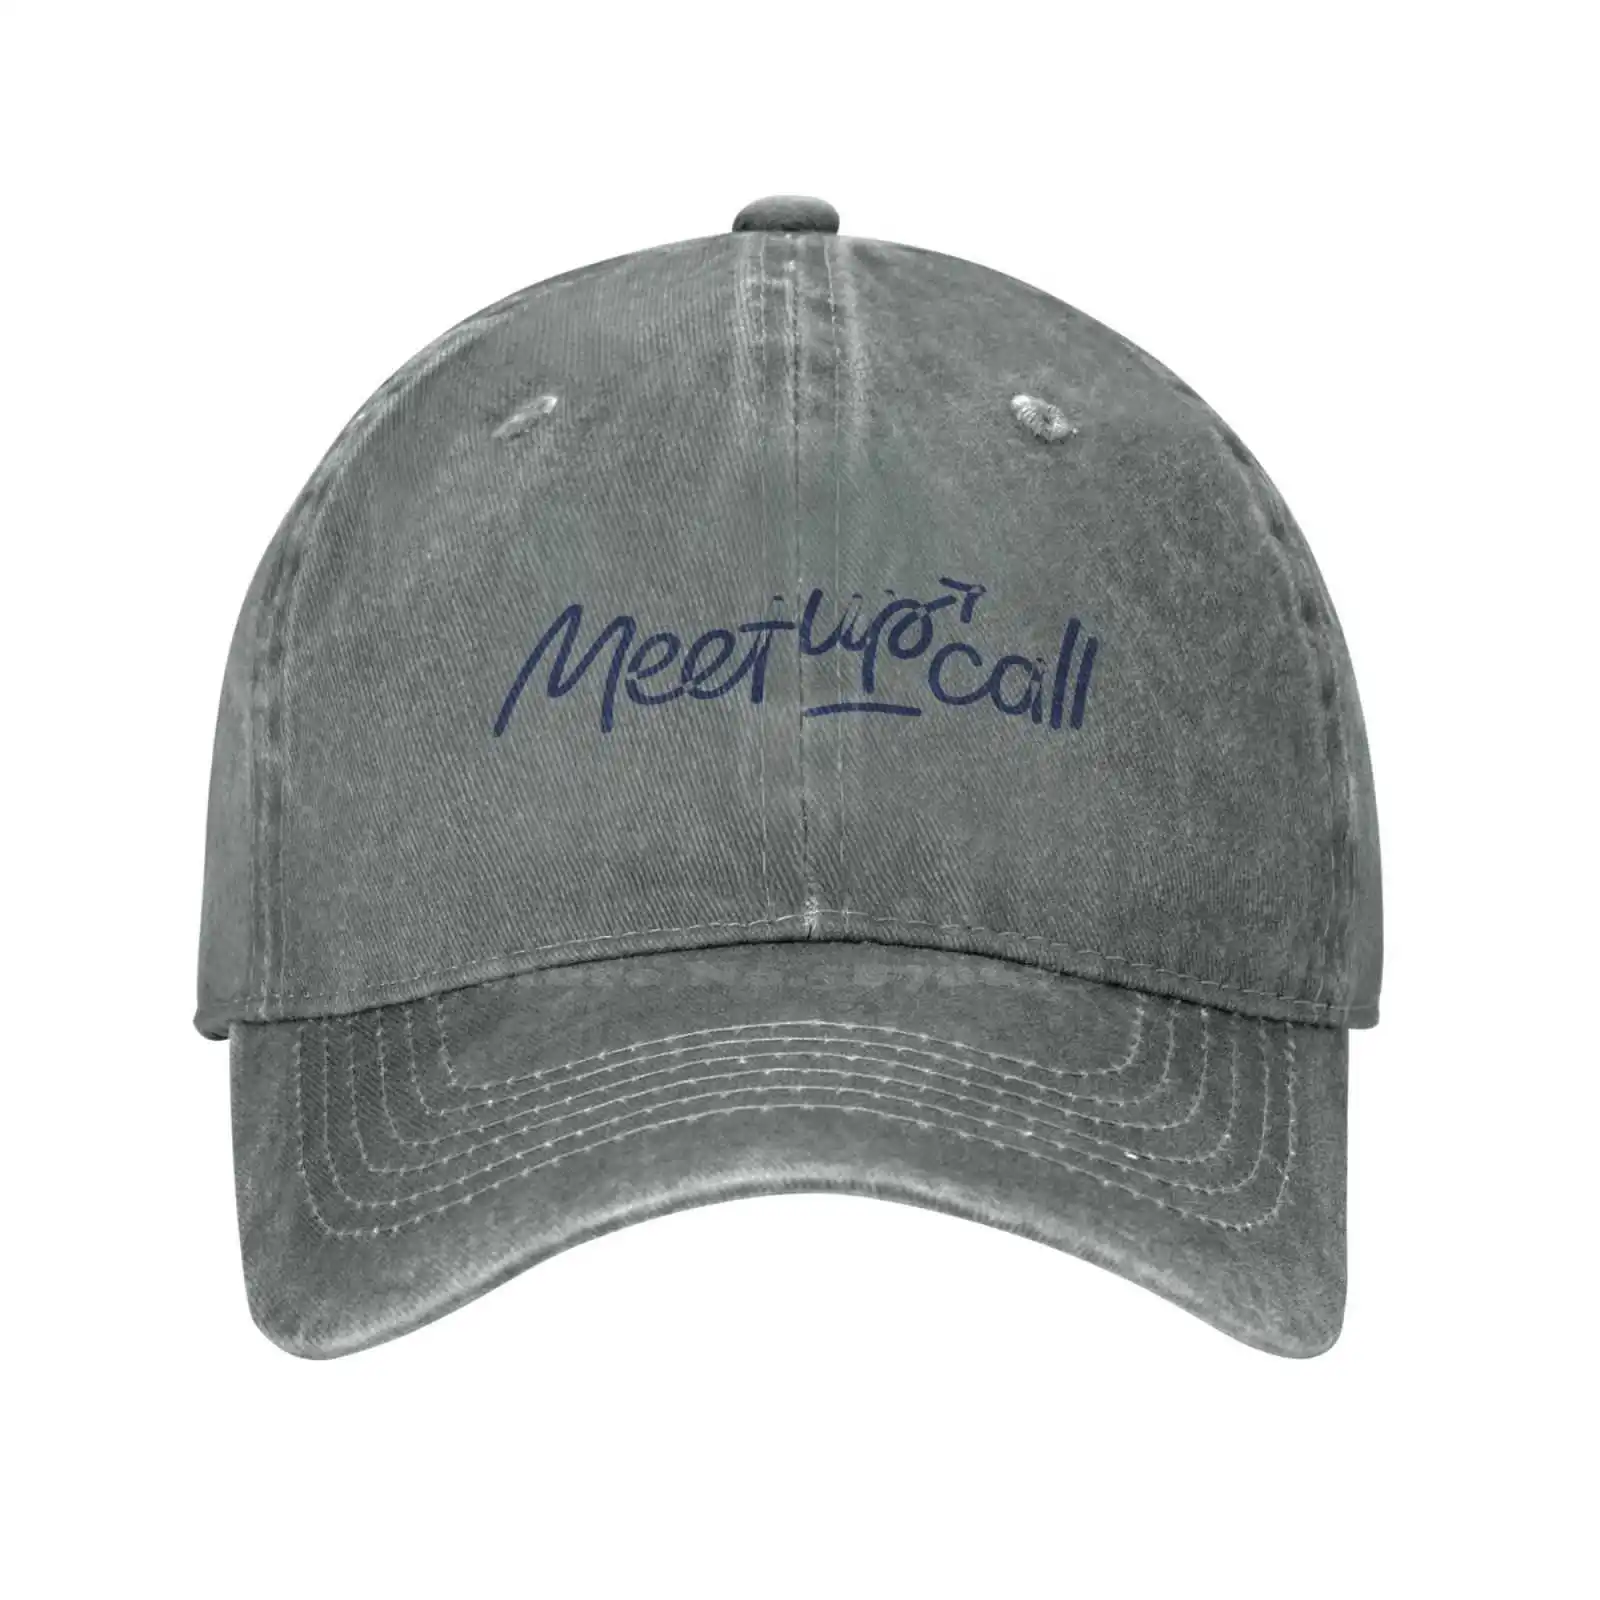 Повседневная джинсовая кепка с графическим принтом логотипа Meetupcall, Вязаная шапка, Бейсболка Изображение 4